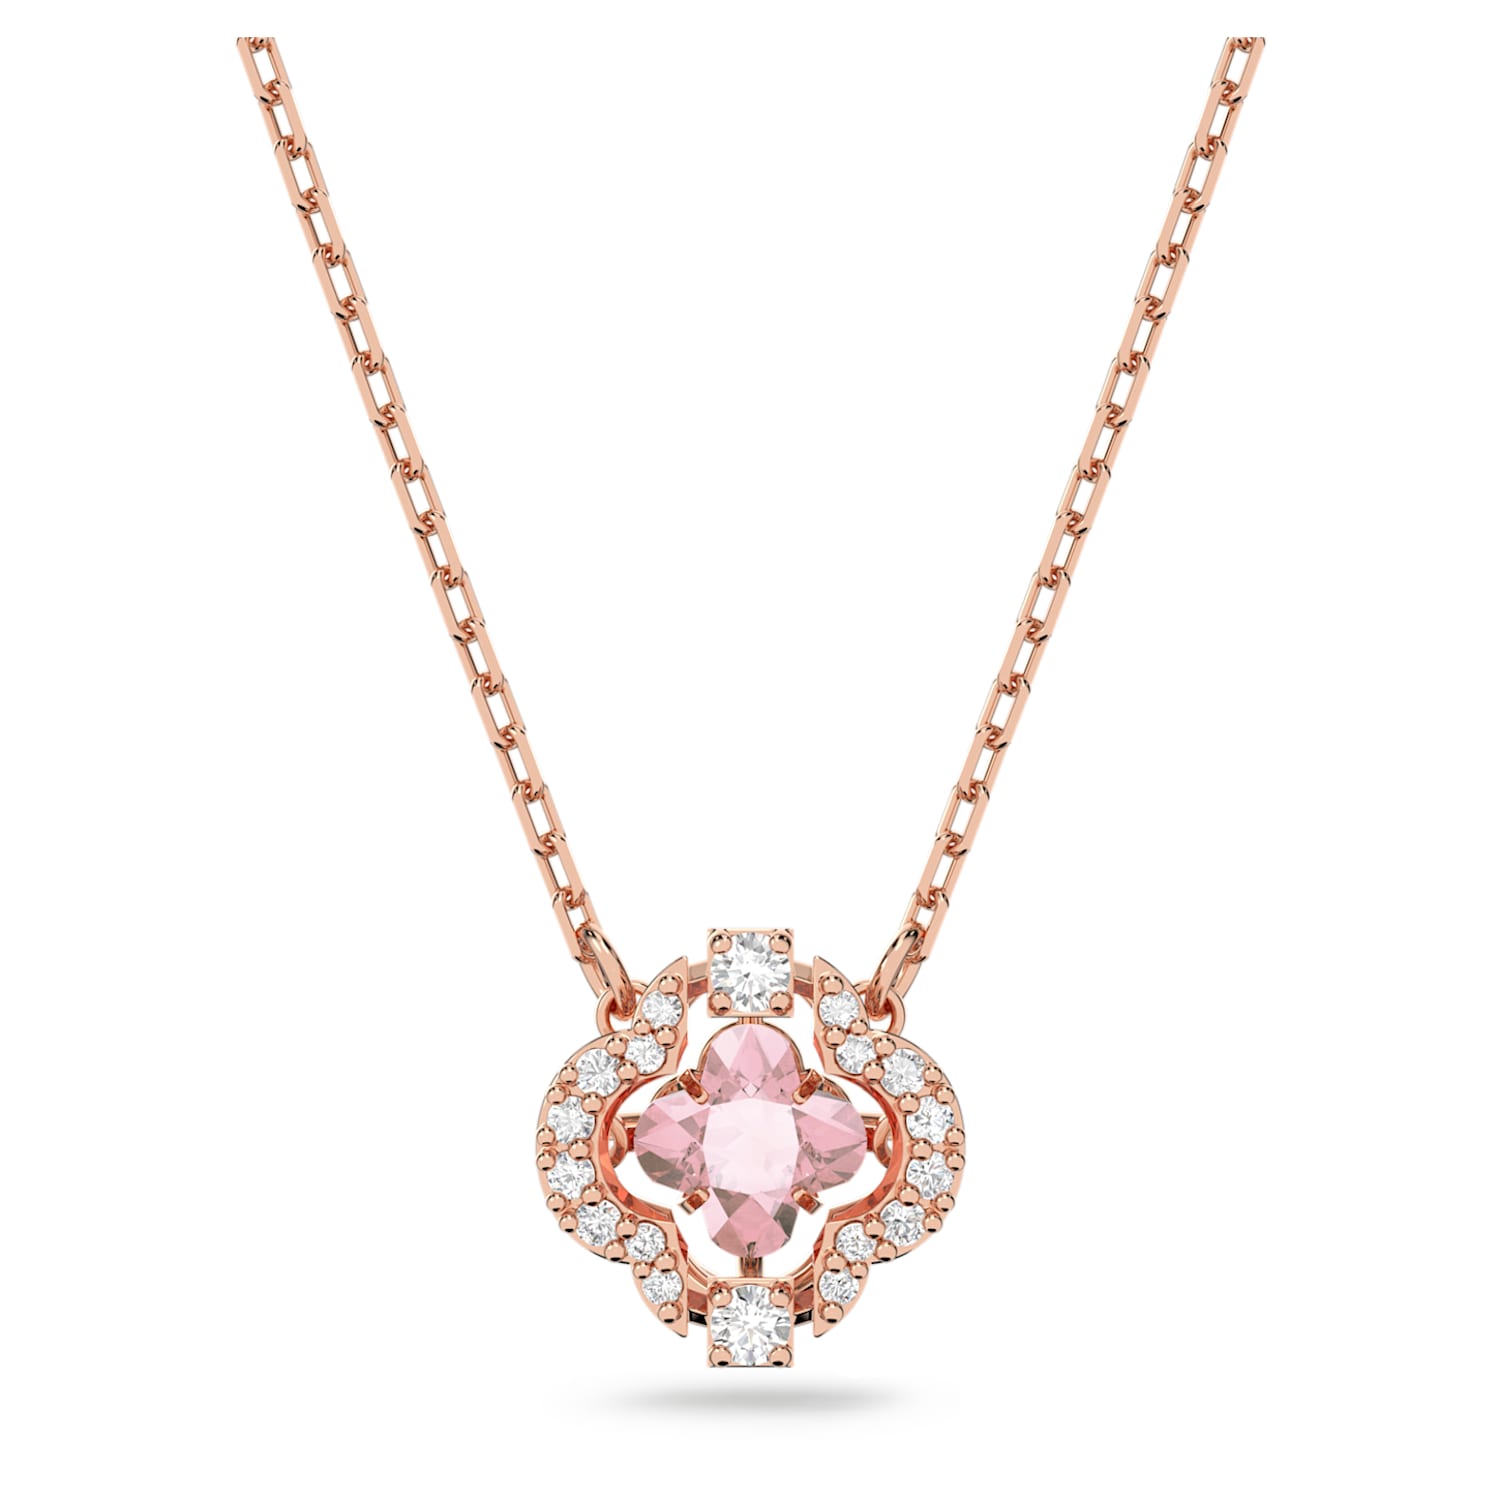 Swarovski Sparkling Dance necklace, Clover, Pink, Rose gold-tone plated